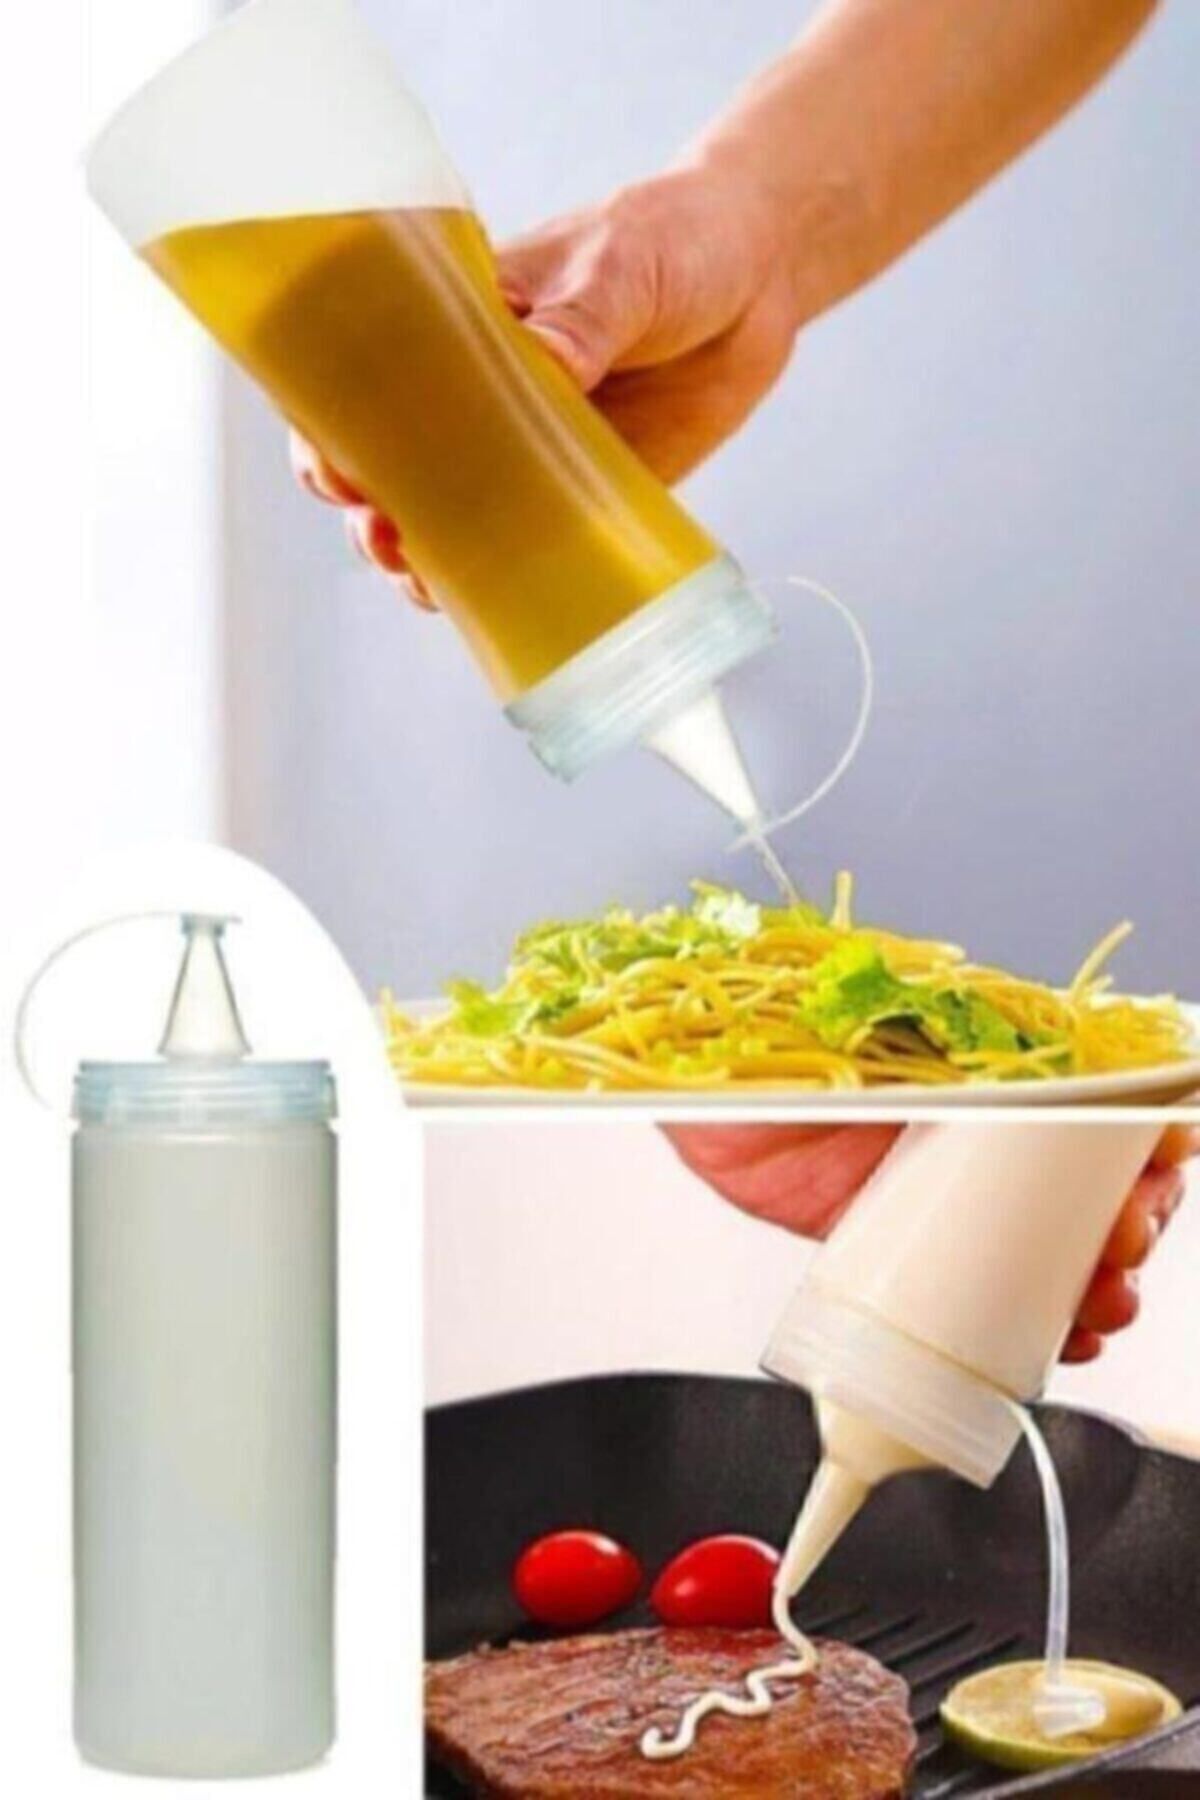 Sun Plastik Master Chef Yağlık Sosluk Şişesi 700 ml Şeffaf Yağdanlık Şişe Plastik